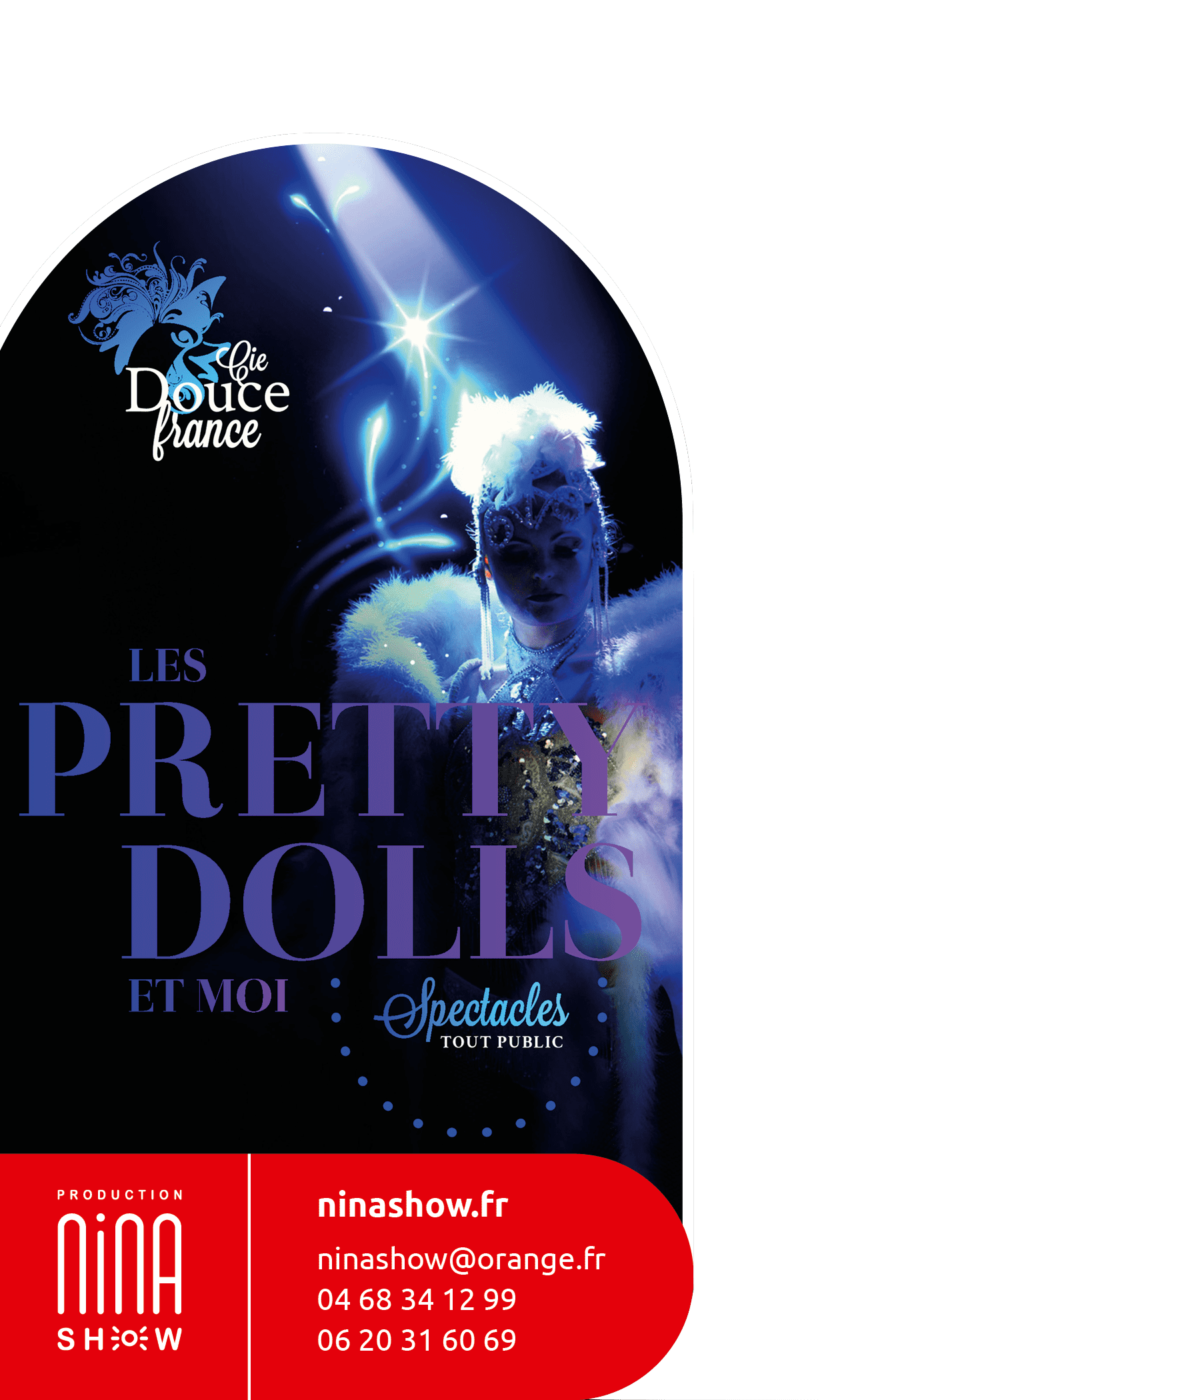 Douce France - Les Pretty Dolls - Spectacle cabaret